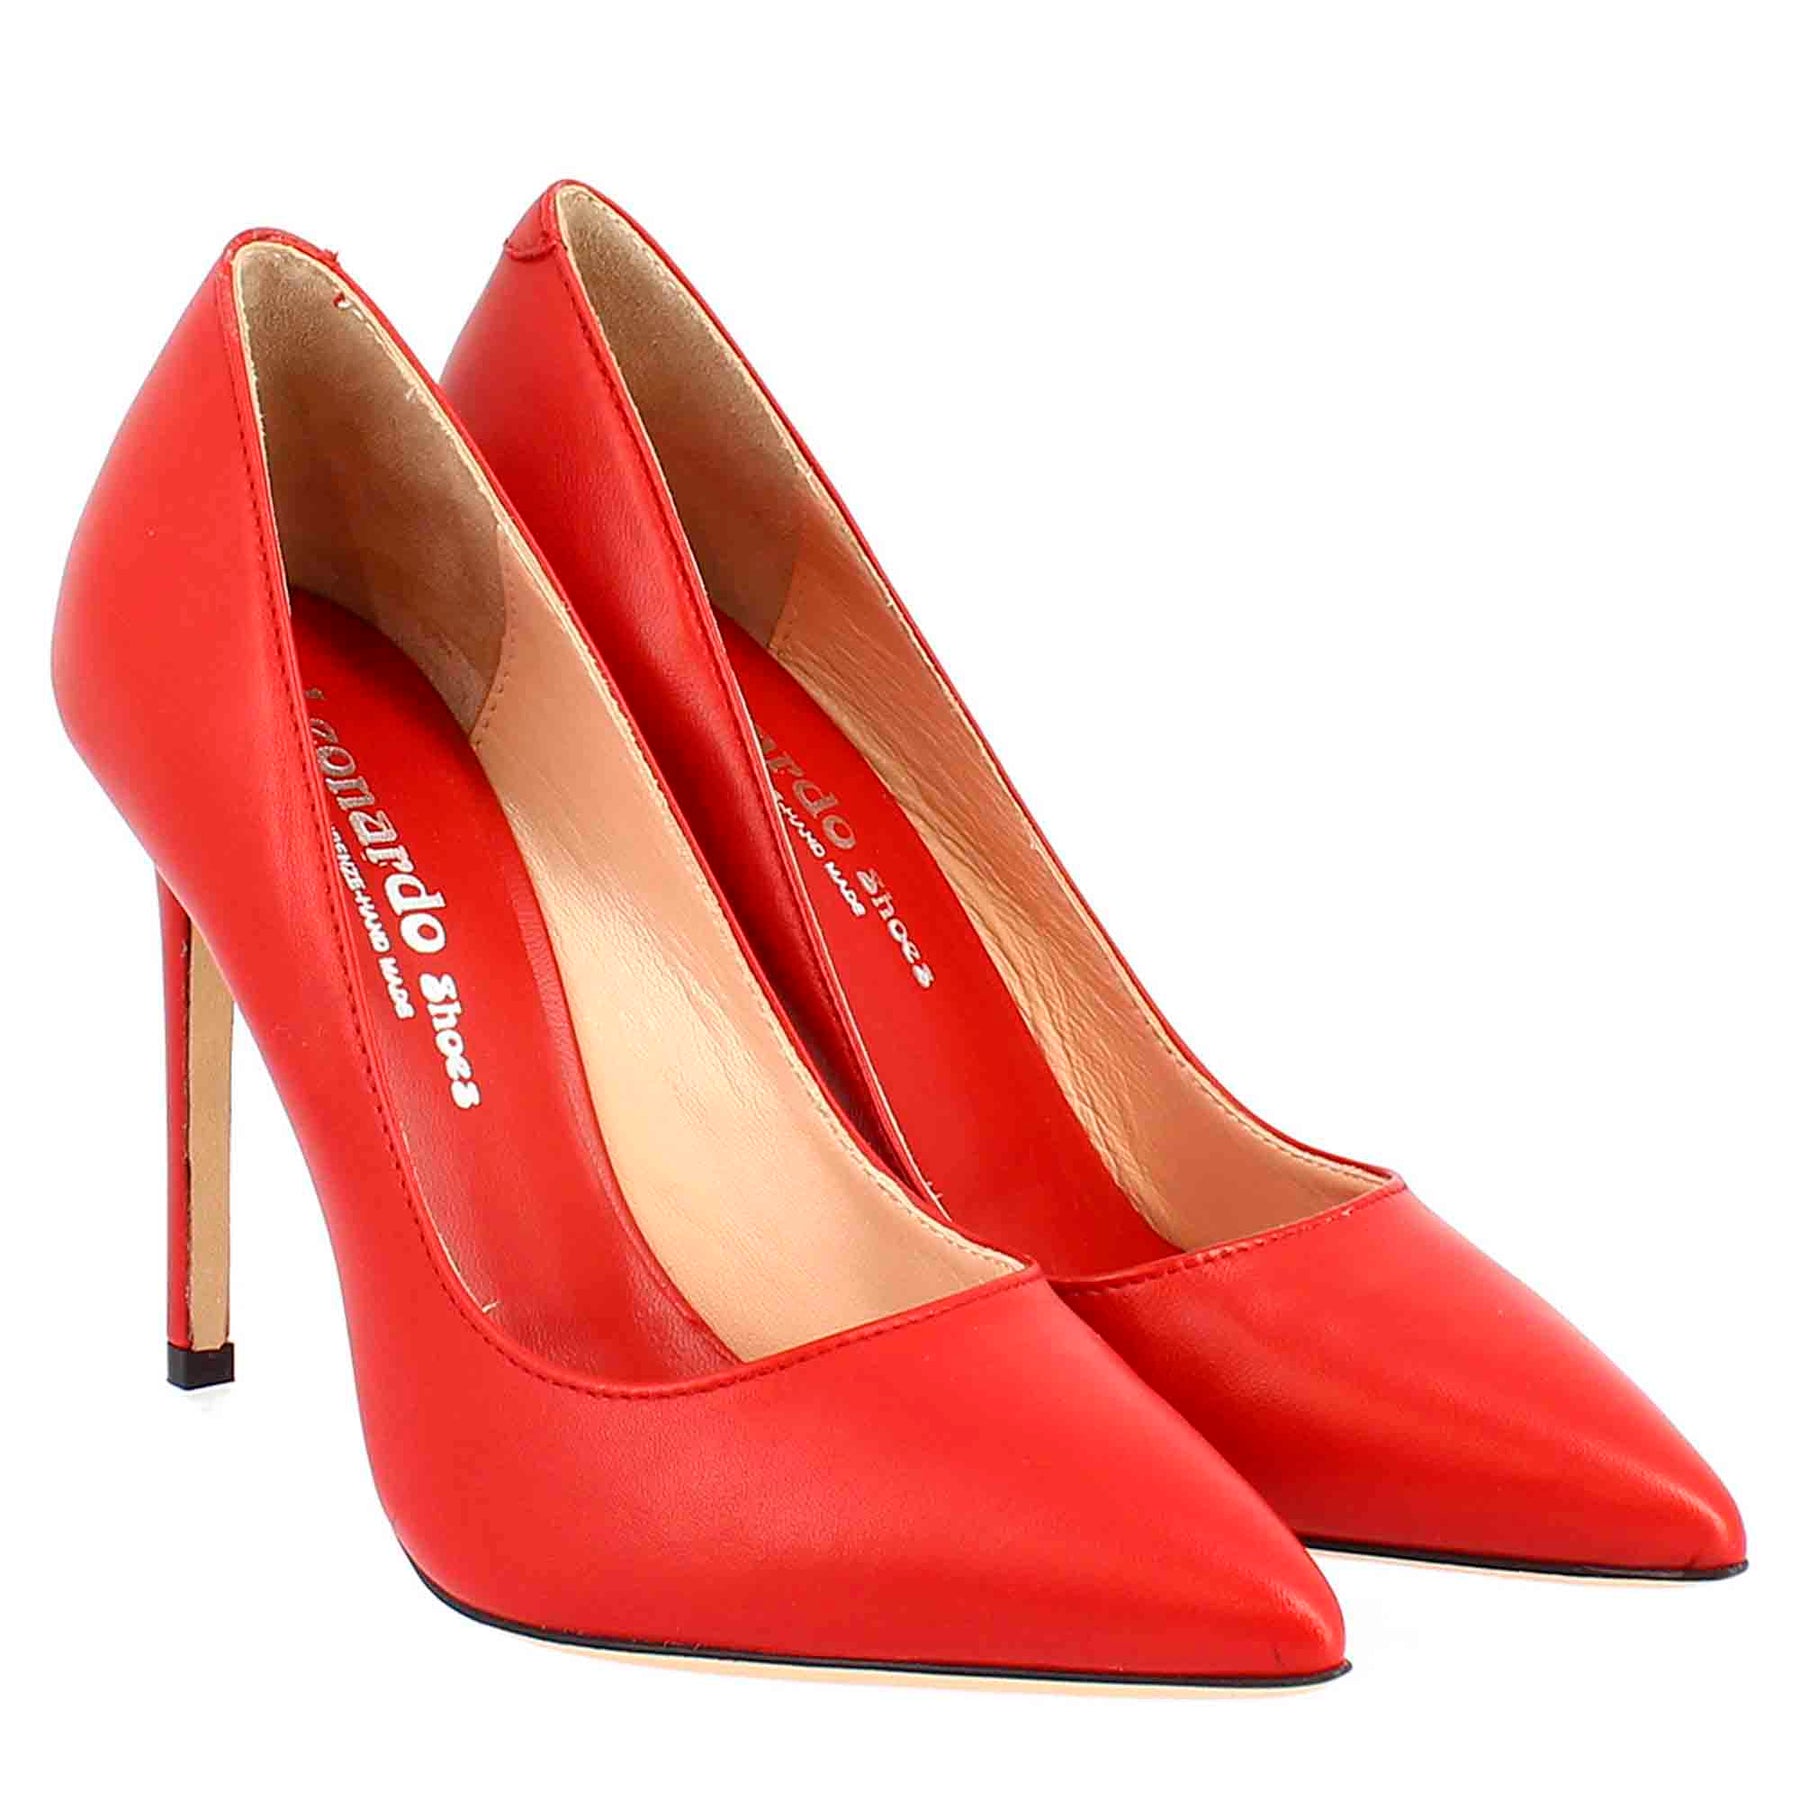 Women's Designer Shoes: Heels & Pumps | Nordstrom